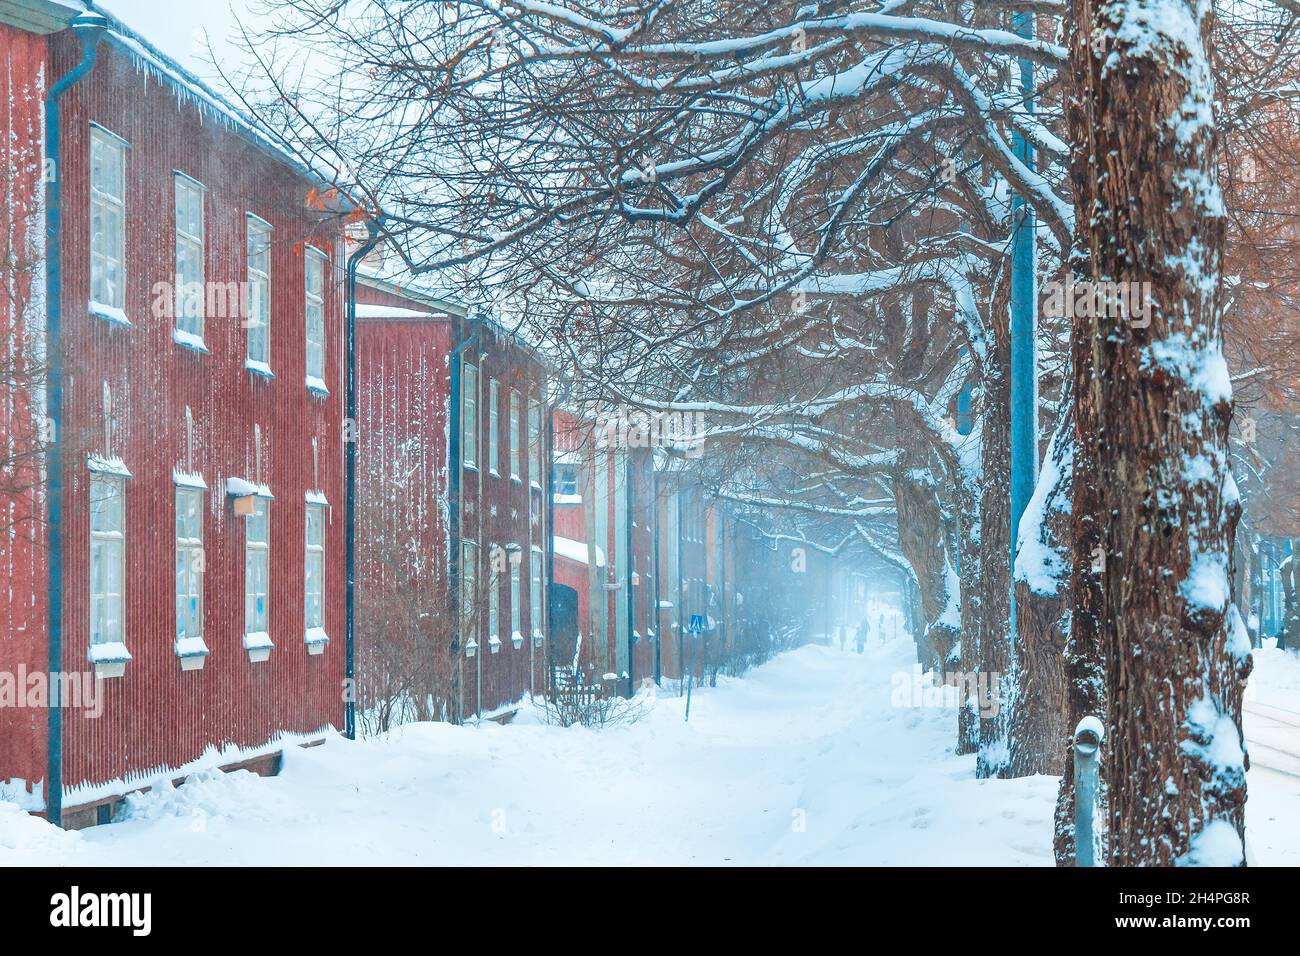 Scène de rue en hiver.Vieux bâtiments en bois façades d'une rue couverte de neige.Chute de neige à Helsinki.Des maisons rouges bordées le long d'un sentier enneigé.Finlande Banque D'Images